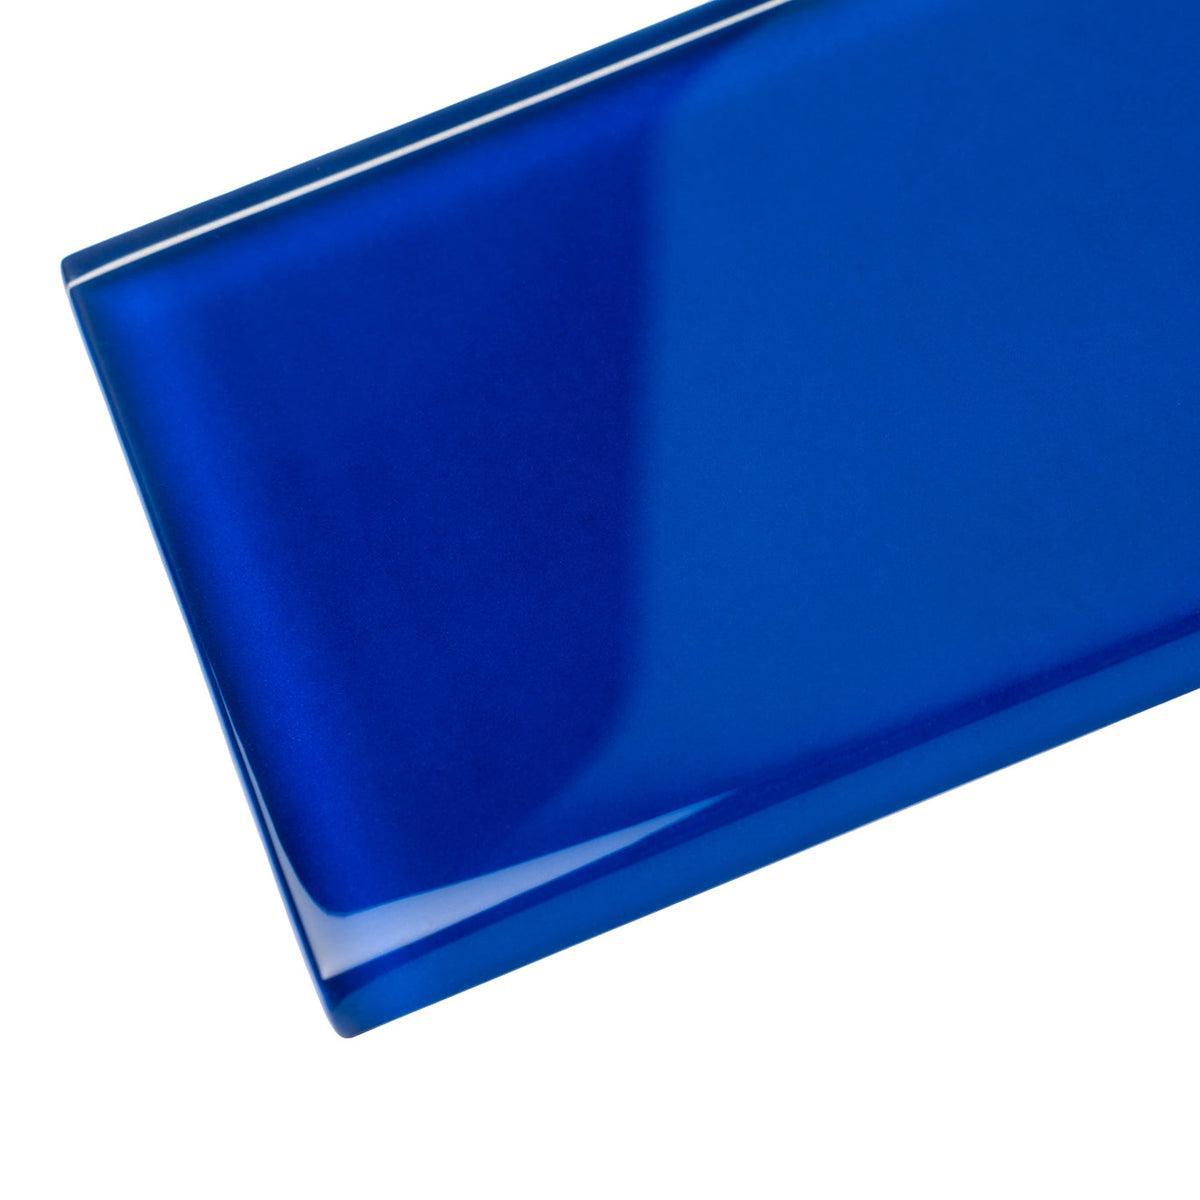 Glacier Cobalt Blue 3X12 Polished Glass Tile